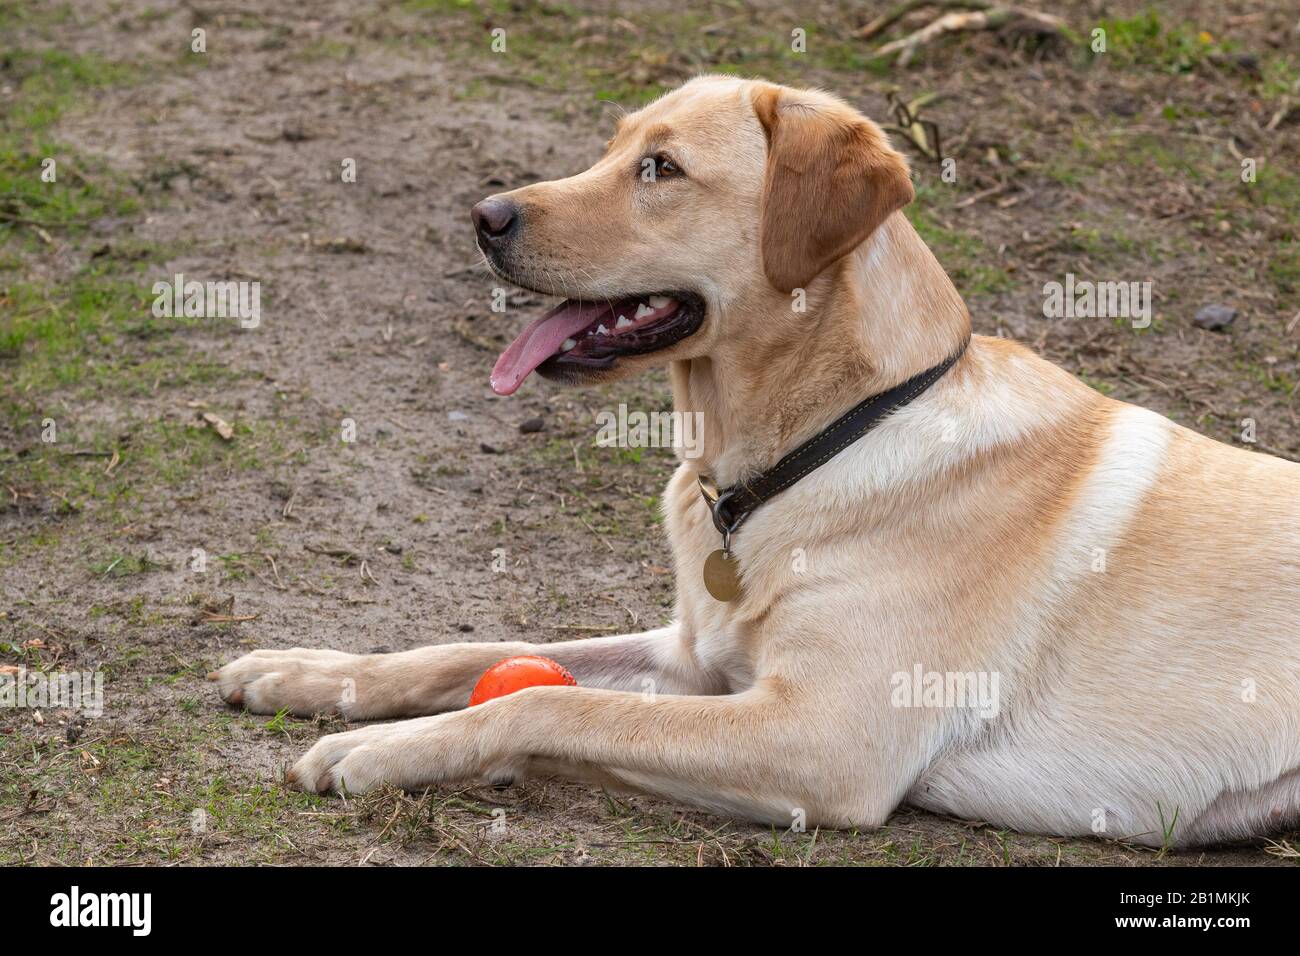 Perro adulto Golden labrador acostado con una bola roja y jadeando, con la lengua hacia fuera Foto de stock